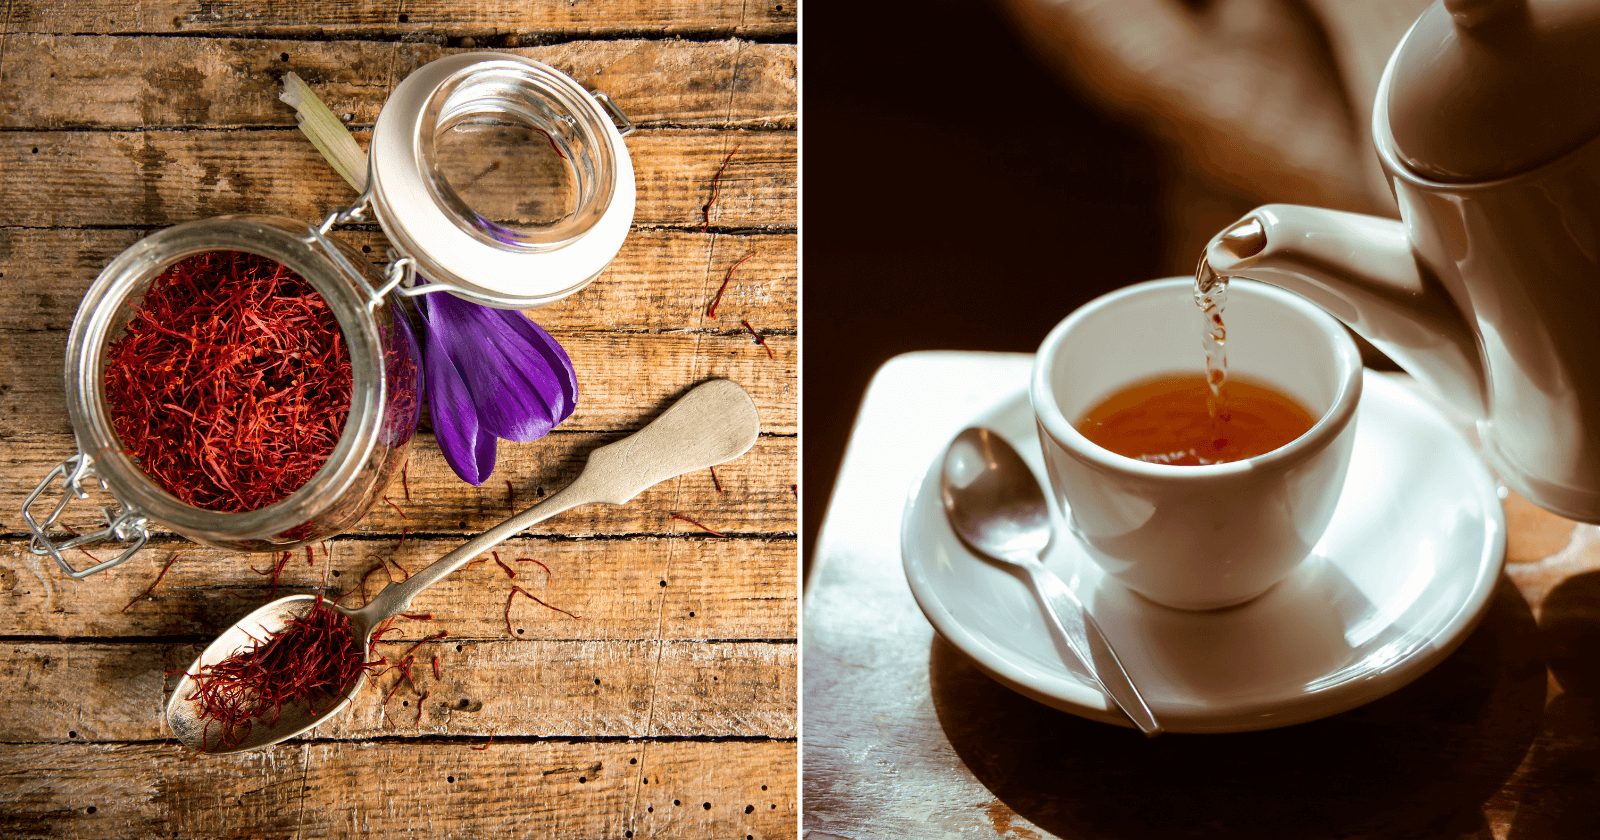 Chá de açafrão: o verdadeiro restaurador de imunidade se preparado do jeito certo (ensinamos!)